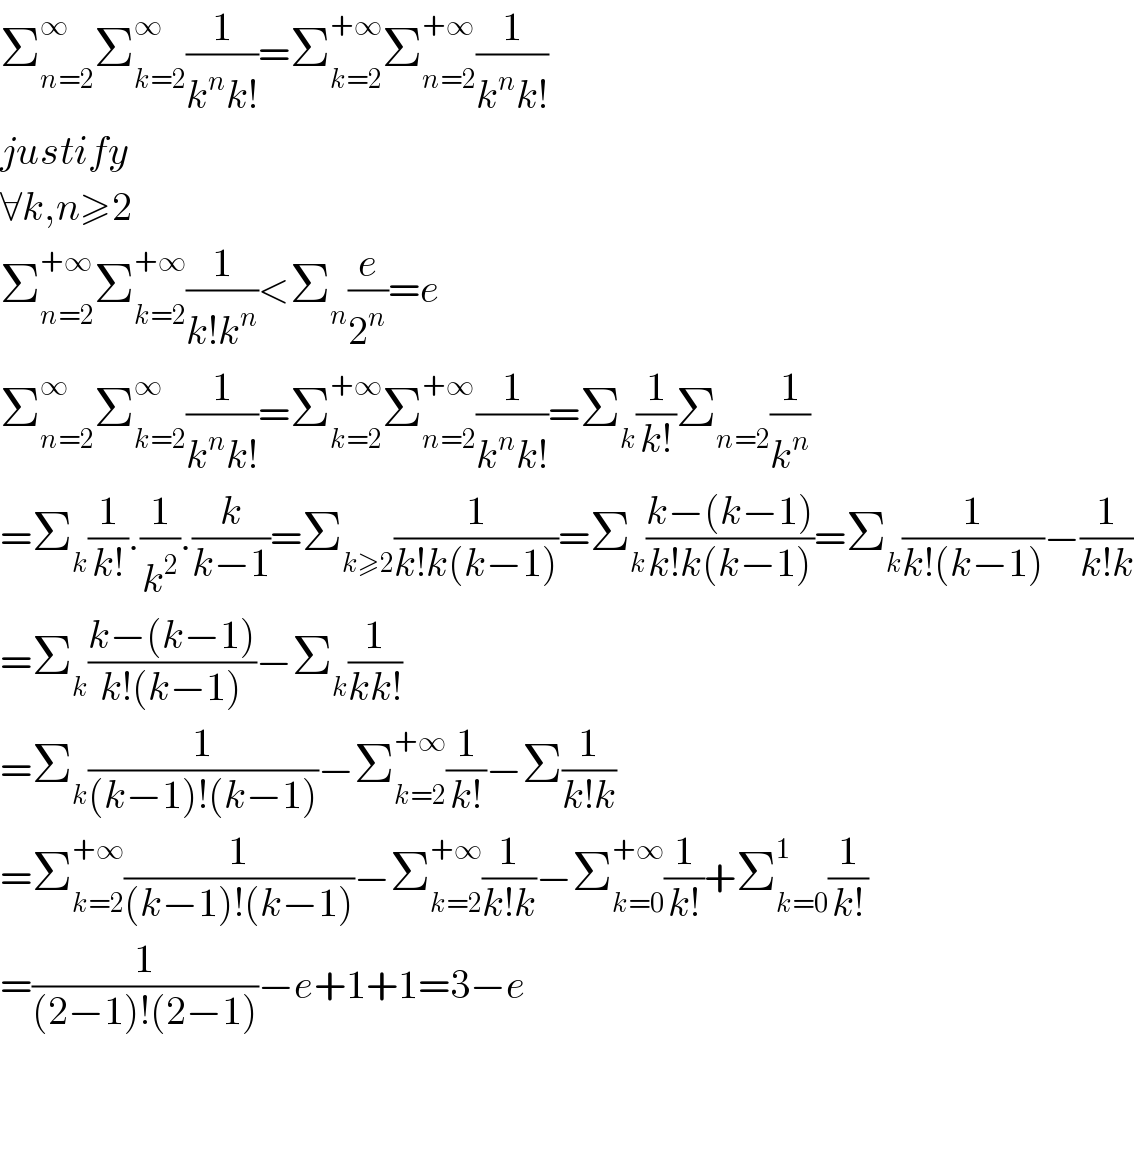 Σ_(n=2) ^∞ Σ_(k=2) ^∞ (1/(k^n k!))=Σ_(k=2) ^(+∞) Σ_(n=2) ^(+∞) (1/(k^n k!))  justify  ∀k,n≥2  Σ_(n=2) ^(+∞) Σ_(k=2) ^(+∞) (1/(k!k^n ))<Σ_n (e/2^n )=e  Σ_(n=2) ^∞ Σ_(k=2) ^∞ (1/(k^n k!))=Σ_(k=2) ^(+∞) Σ_(n=2) ^(+∞) (1/(k^n k!))=Σ_k (1/(k!))Σ_(n=2) (1/k^n )  =Σ_k (1/(k!)).(1/k^2 ).(k/(k−1))=Σ_(k≥2) (1/(k!k(k−1)))=Σ_k ((k−(k−1))/(k!k(k−1)))=Σ_k (1/(k!(k−1)))−(1/(k!k))  =Σ_k ((k−(k−1))/(k!(k−1)))−Σ_k (1/(kk!))  =Σ_k (1/((k−1)!(k−1)))−Σ_(k=2) ^(+∞) (1/(k!))−Σ(1/(k!k))  =Σ_(k=2) ^(+∞) (1/((k−1)!(k−1)))−Σ_(k=2) ^(+∞) (1/(k!k))−Σ_(k=0) ^(+∞) (1/(k!))+Σ_(k=0) ^1 (1/(k!))  =(1/((2−1)!(2−1)))−e+1+1=3−e      